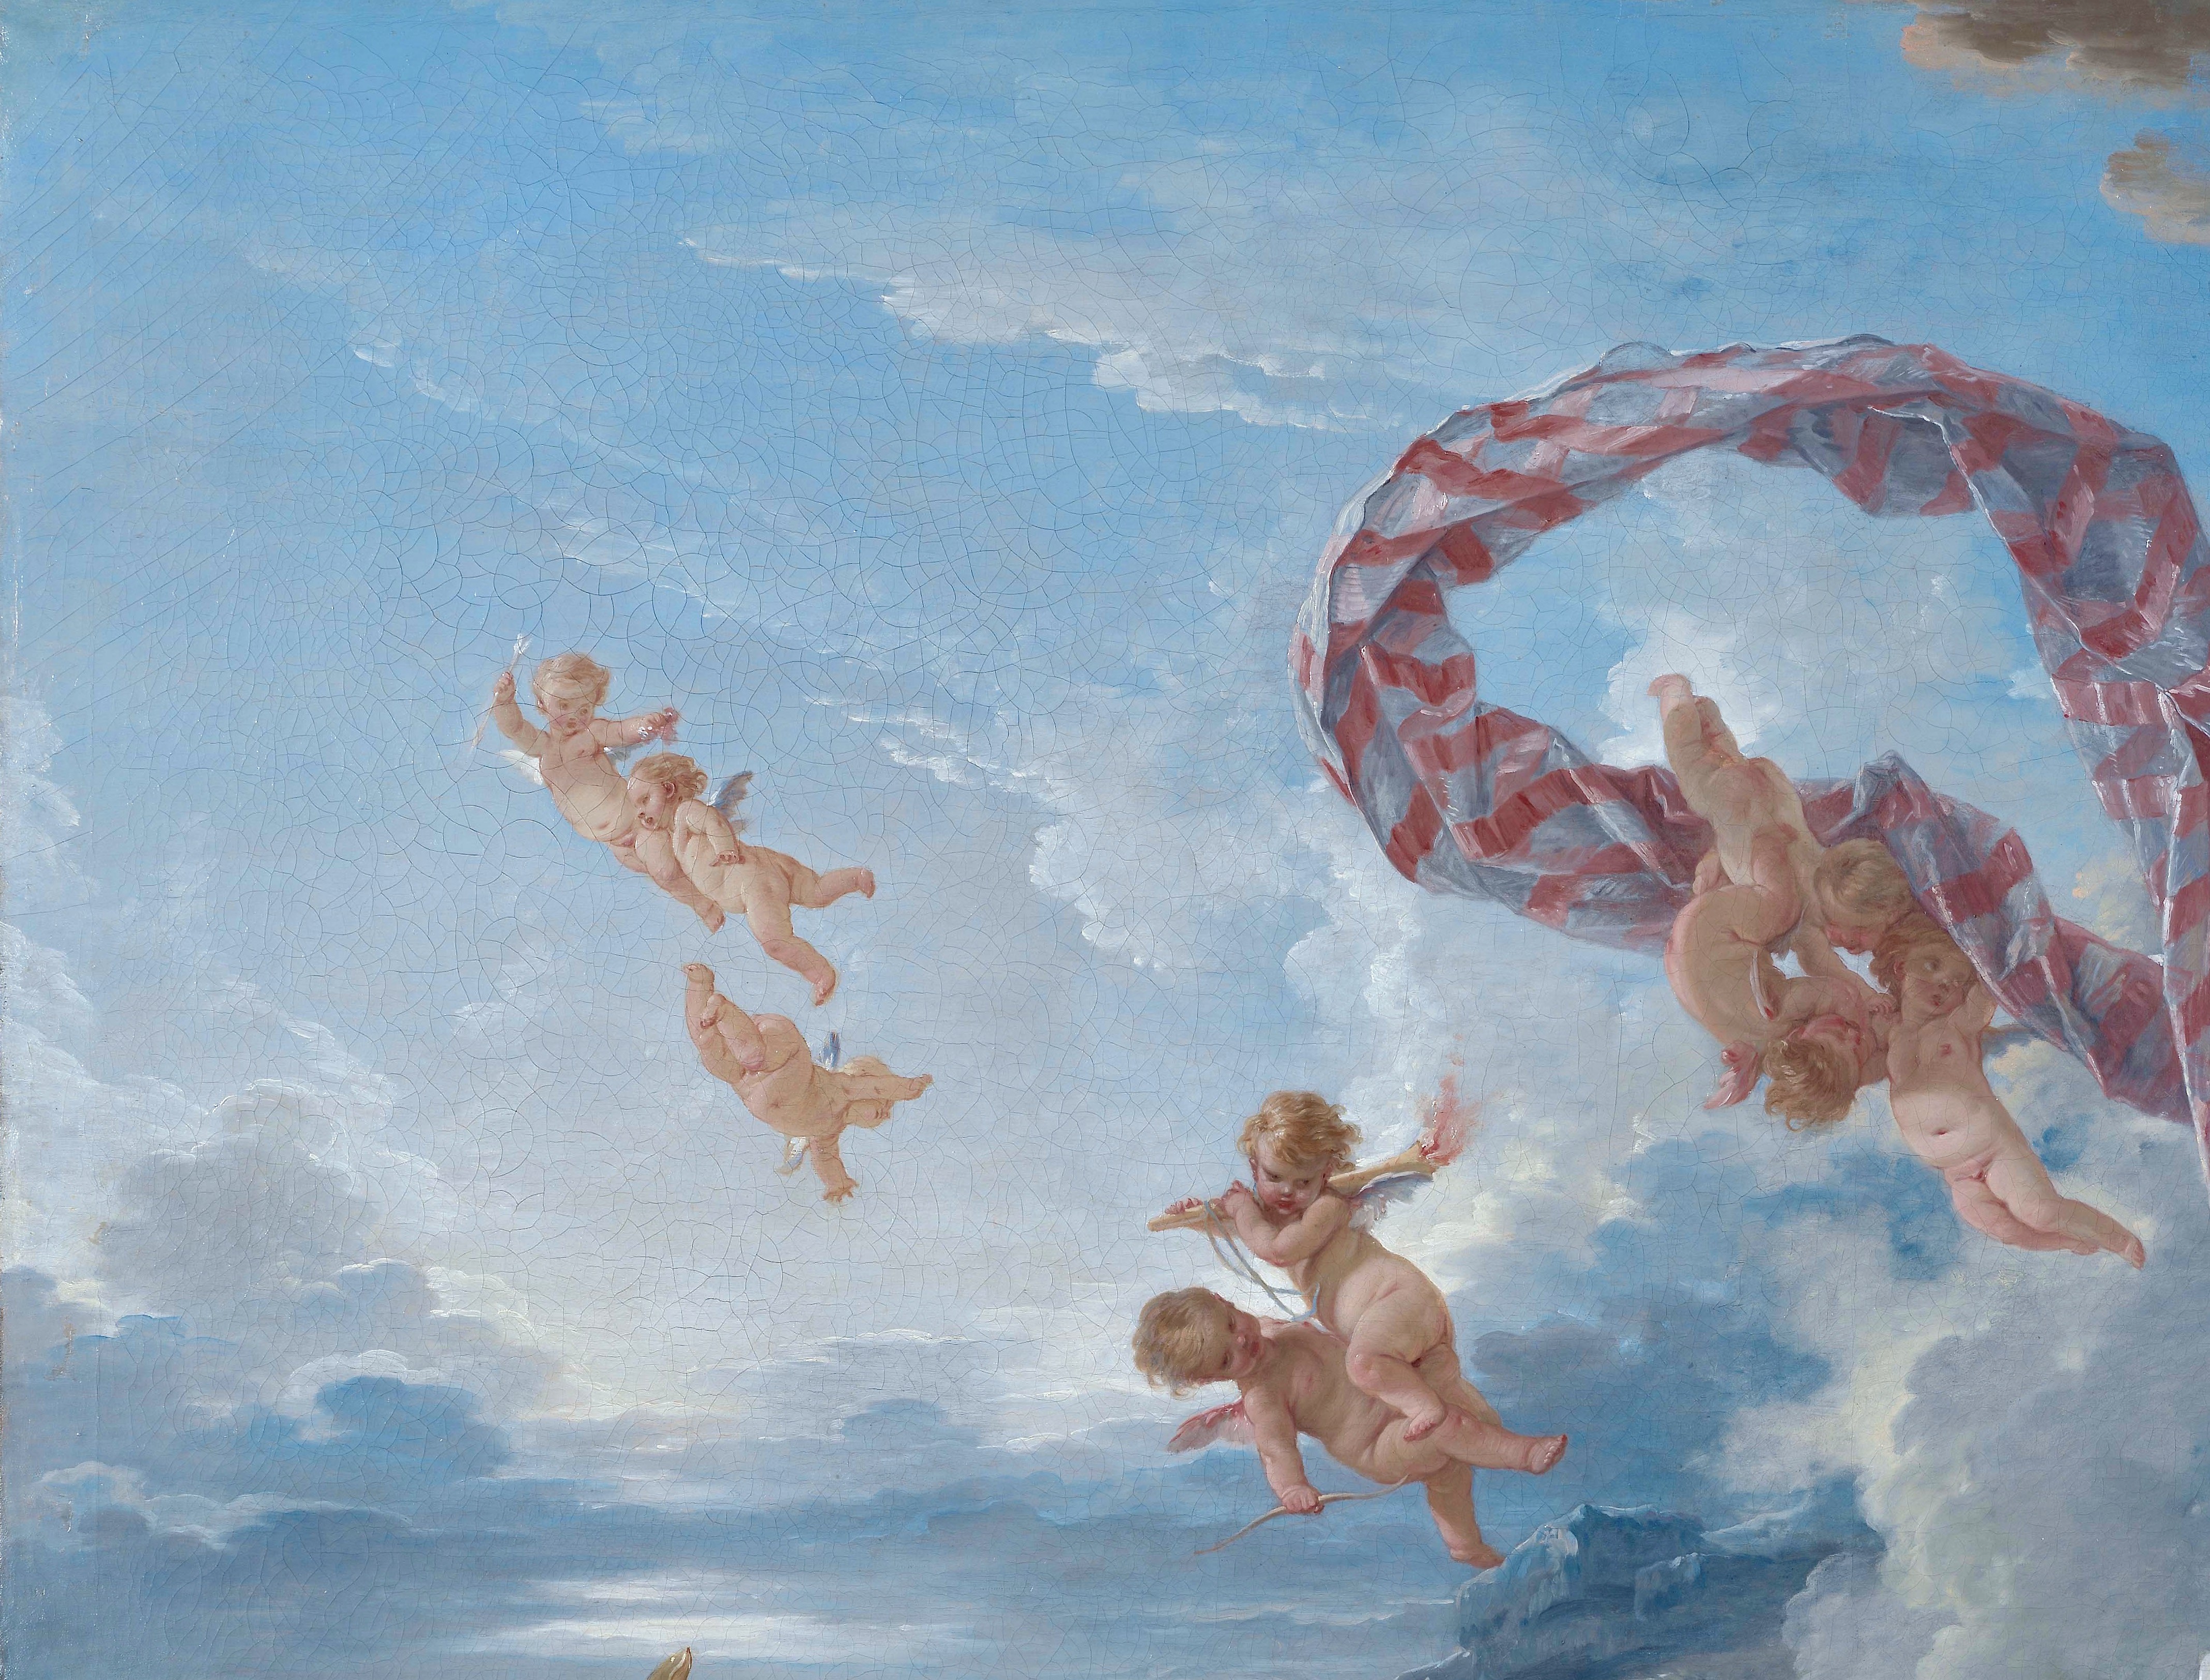 The Triumph of Venus, by François Boucher